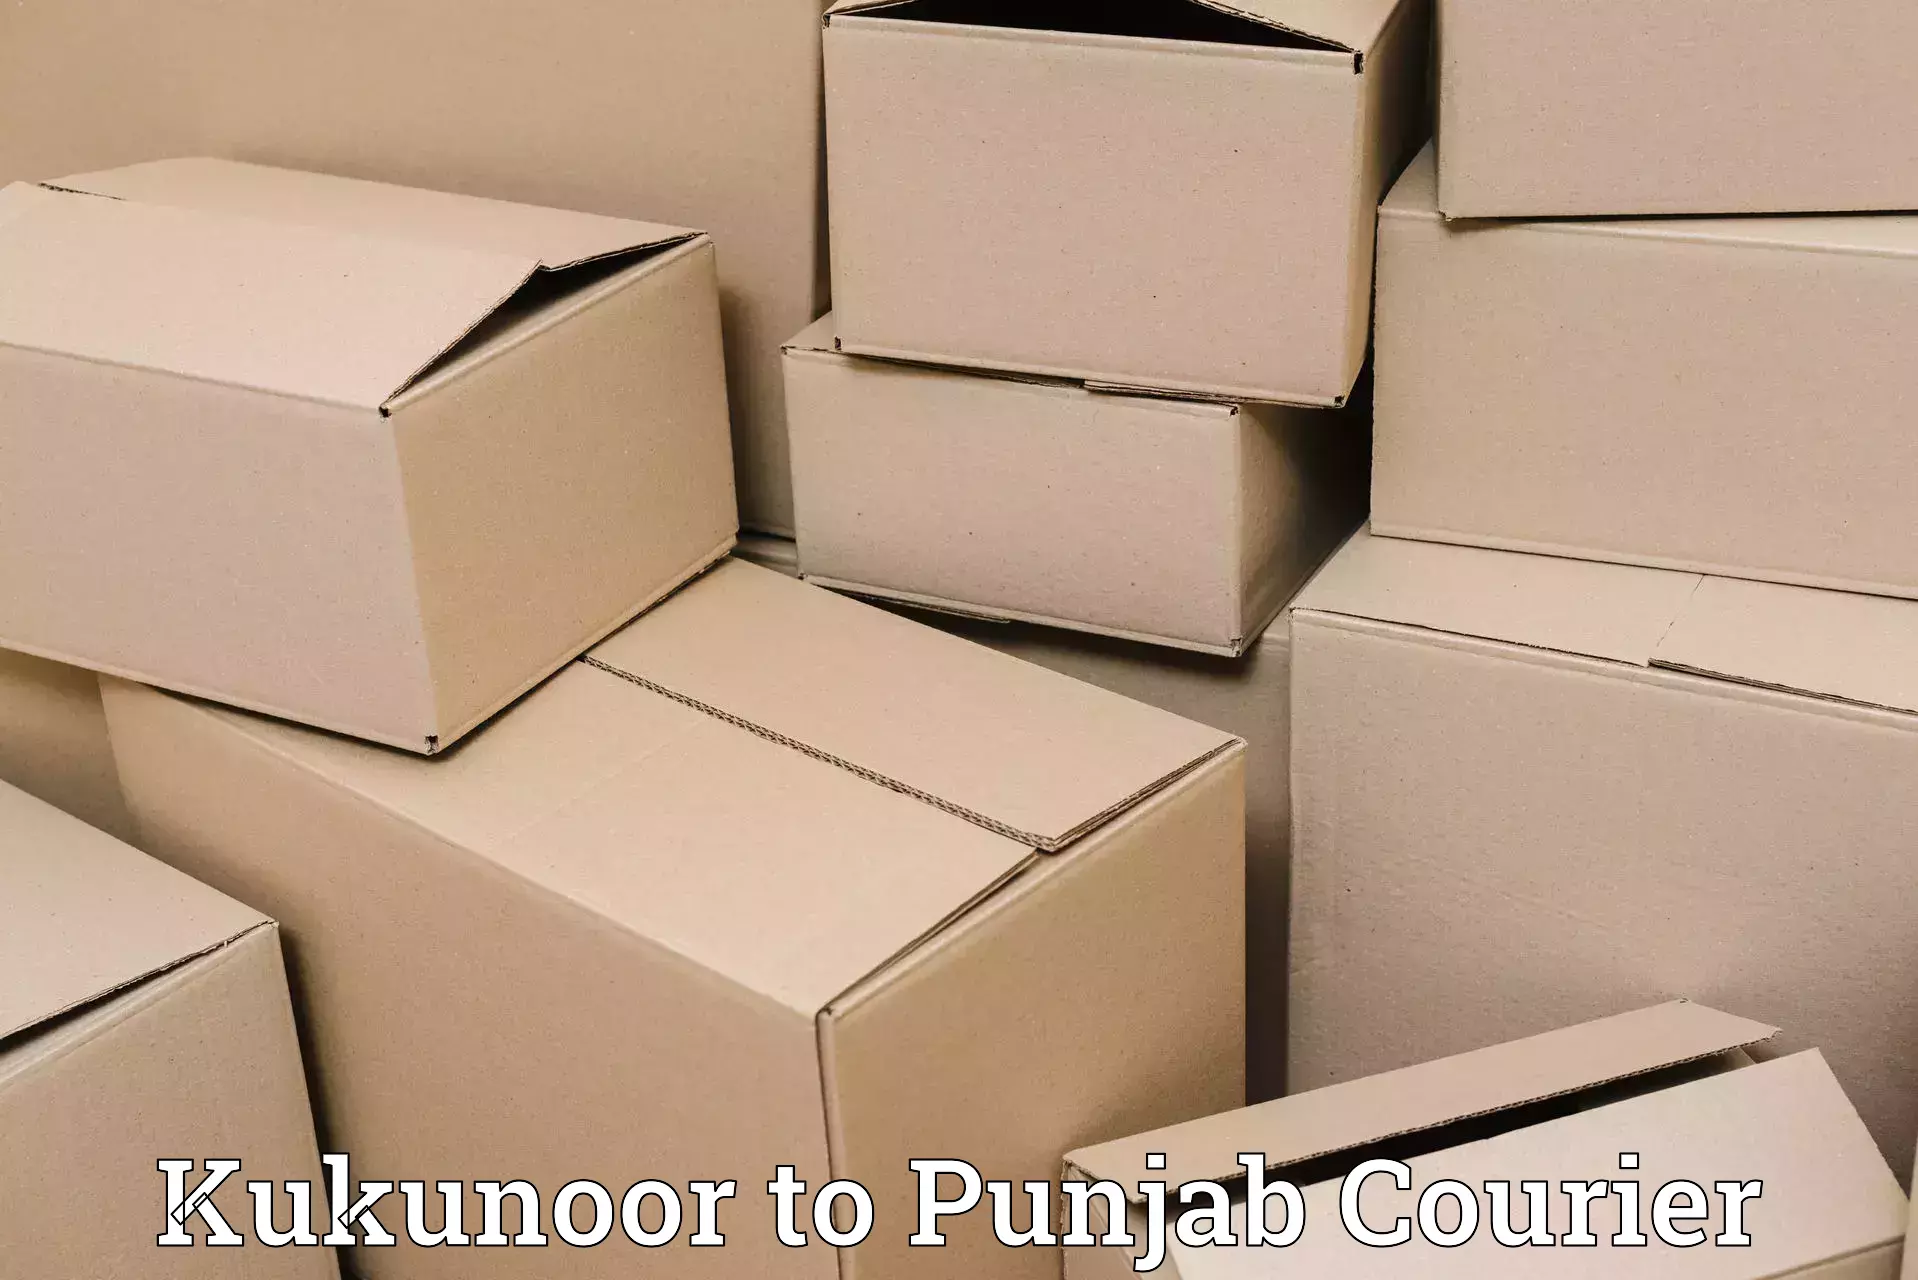 Weekend courier service Kukunoor to Batala